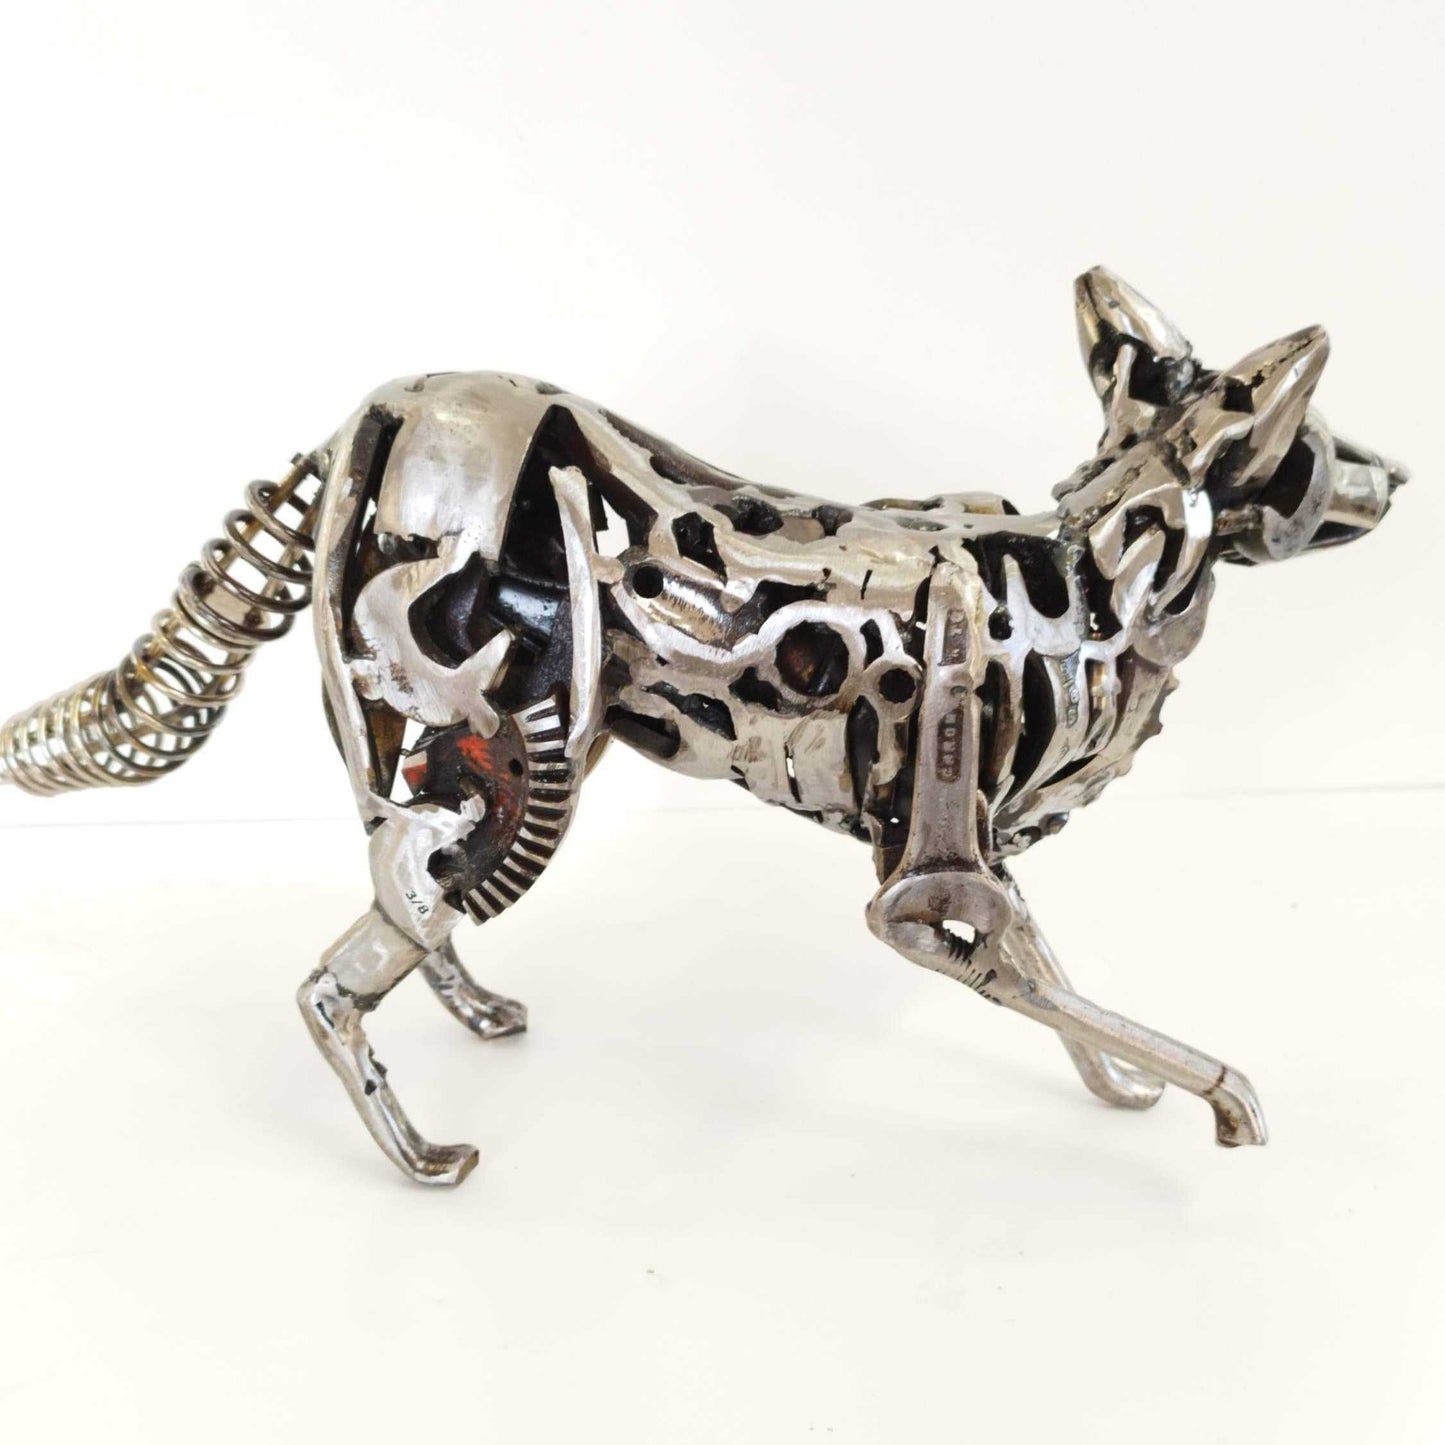 Steel Fox Sculpture ArtbyMyleslaurence